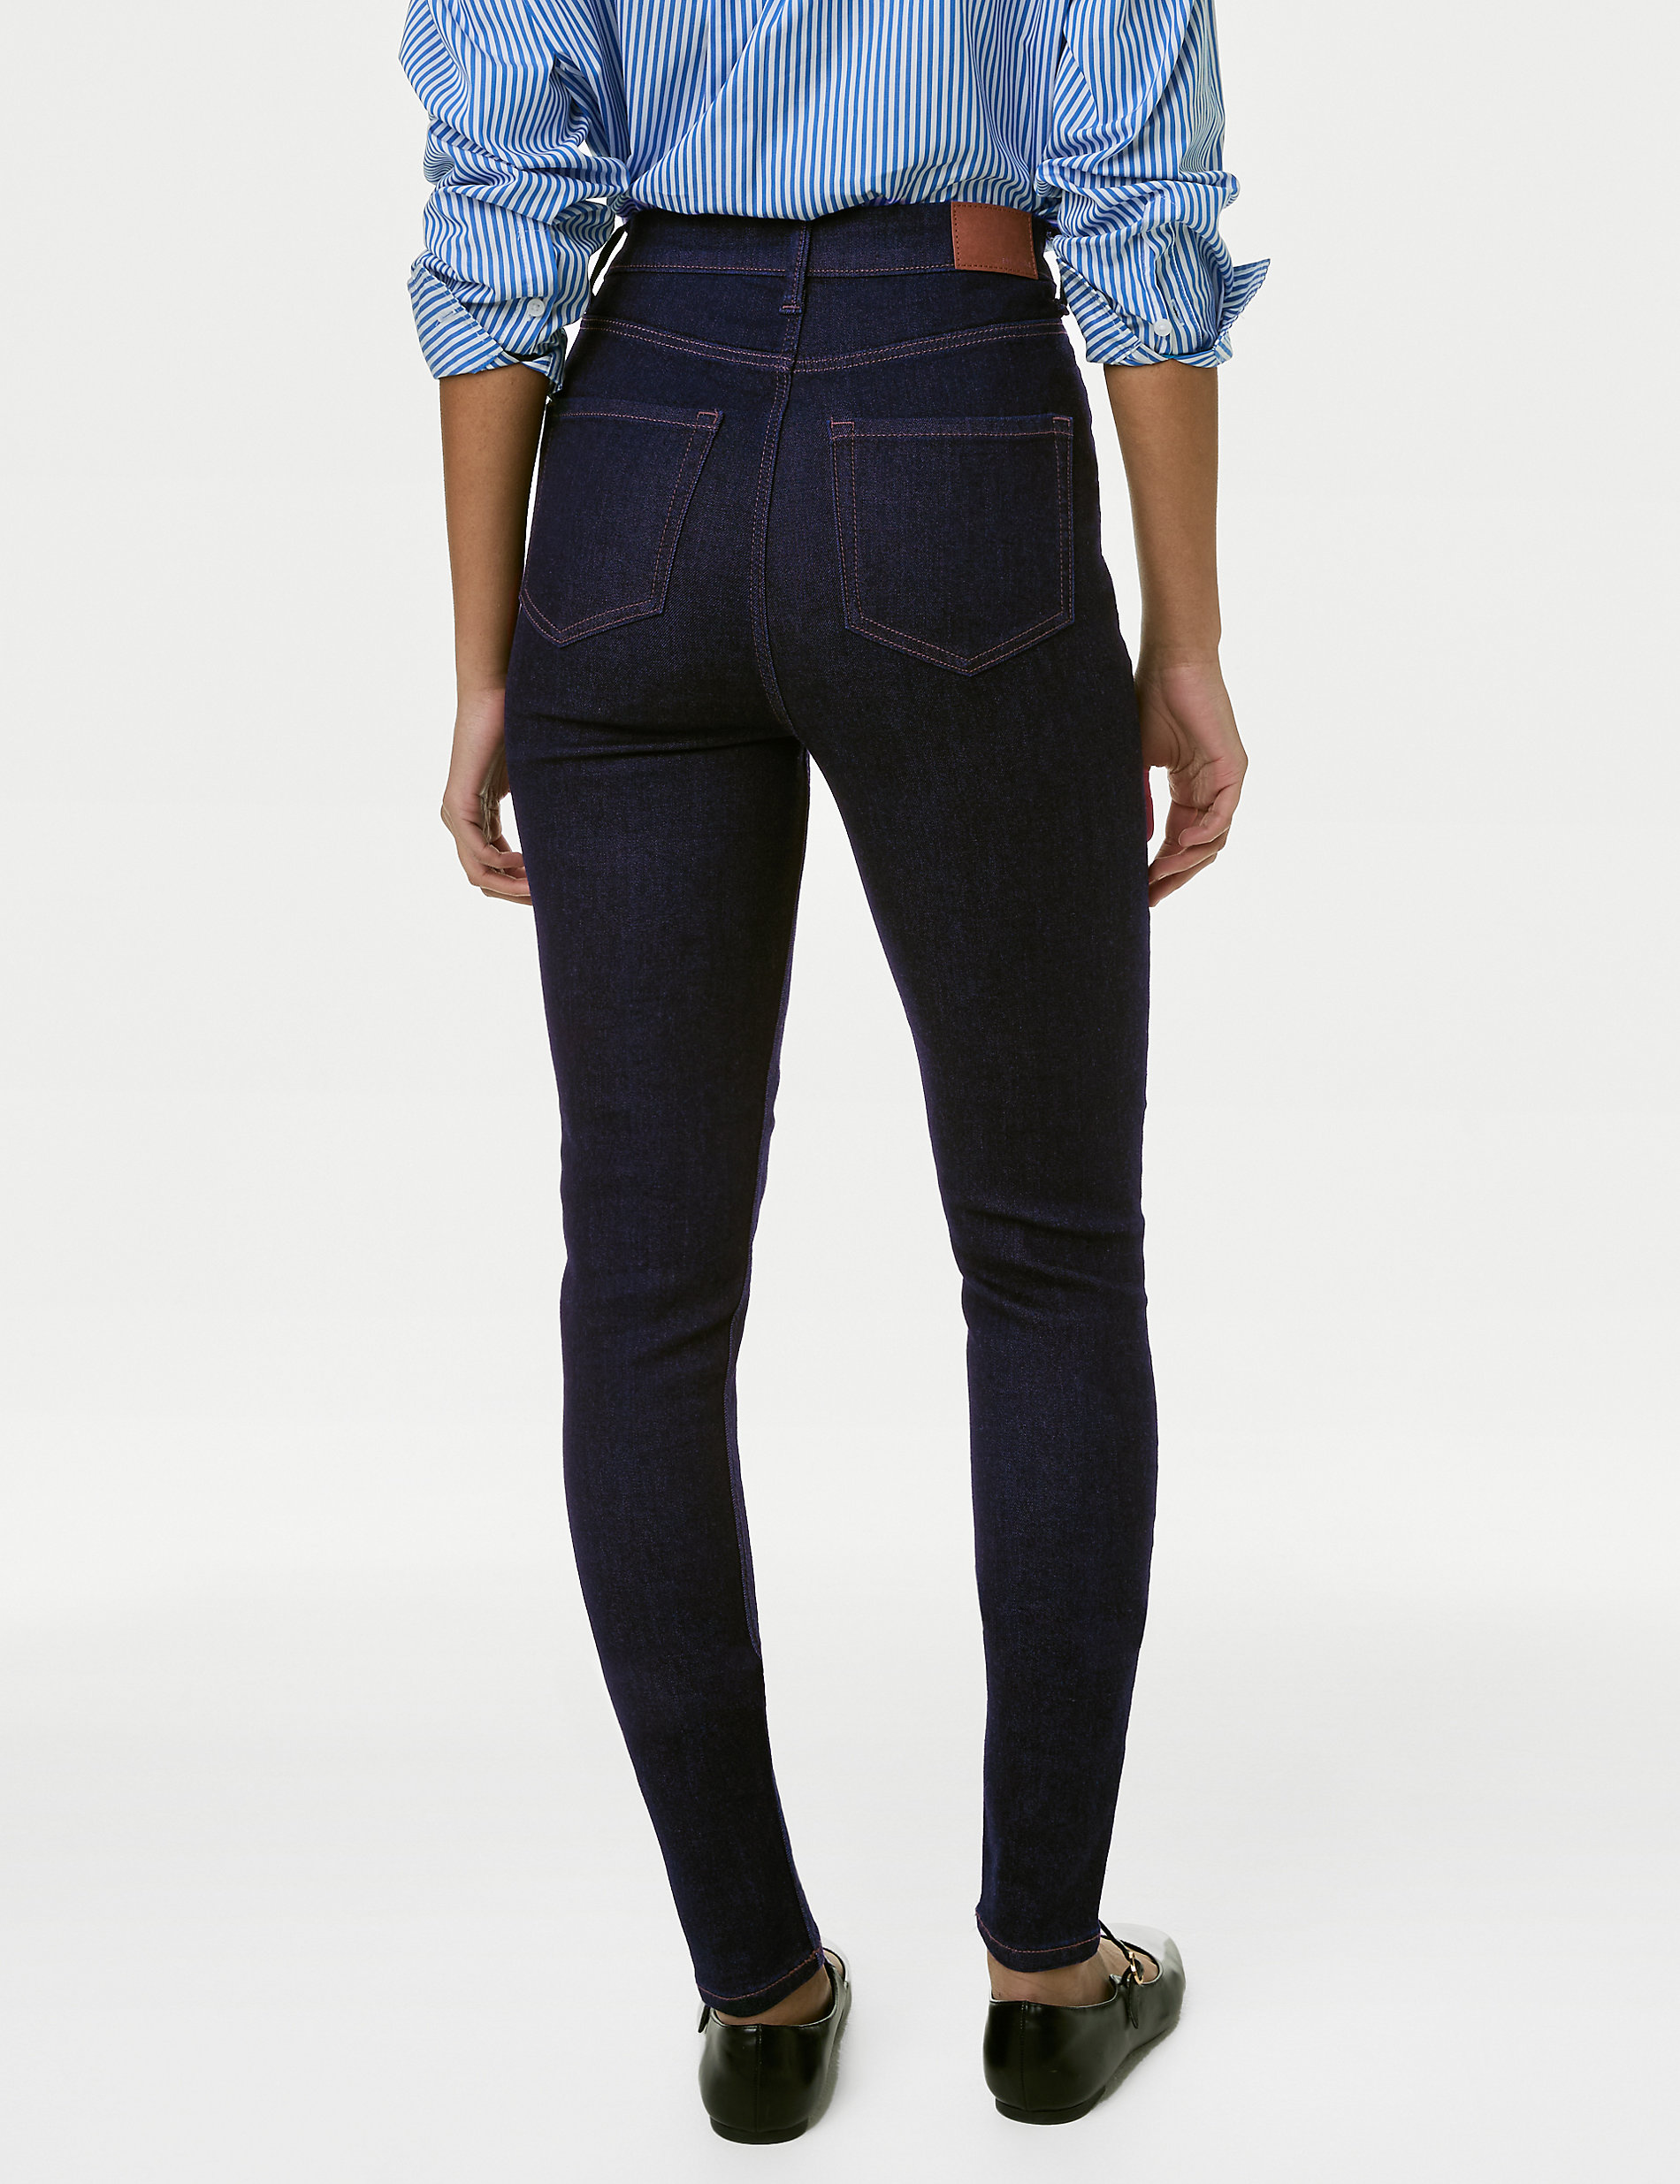 Superweiche Skinny-Jeans „Ivy“ mit hohem Bund